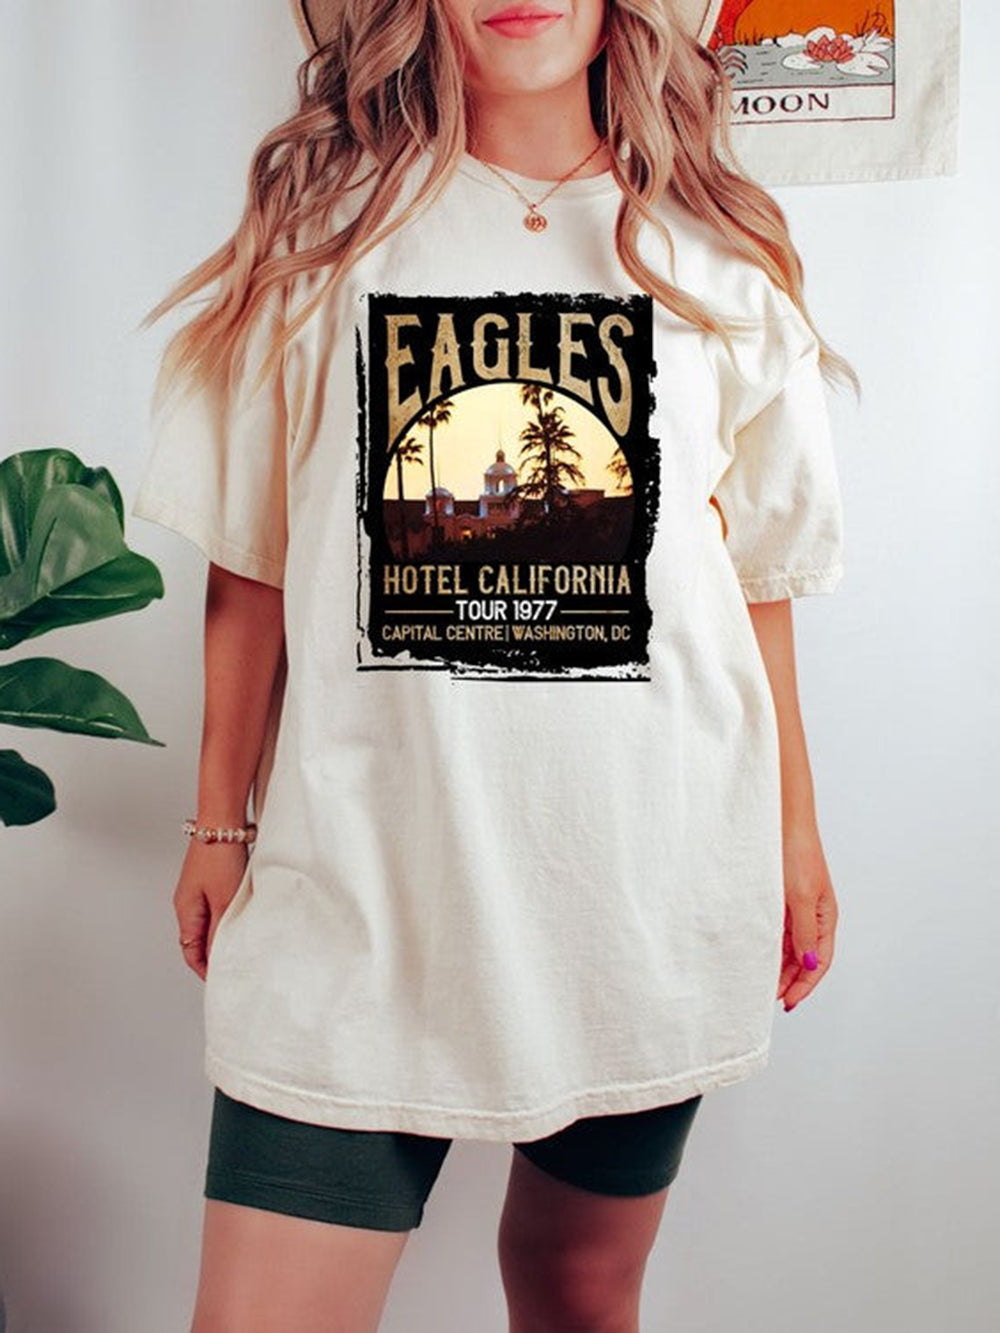 Maglietta dell'Eagles Hotel California Music Fest